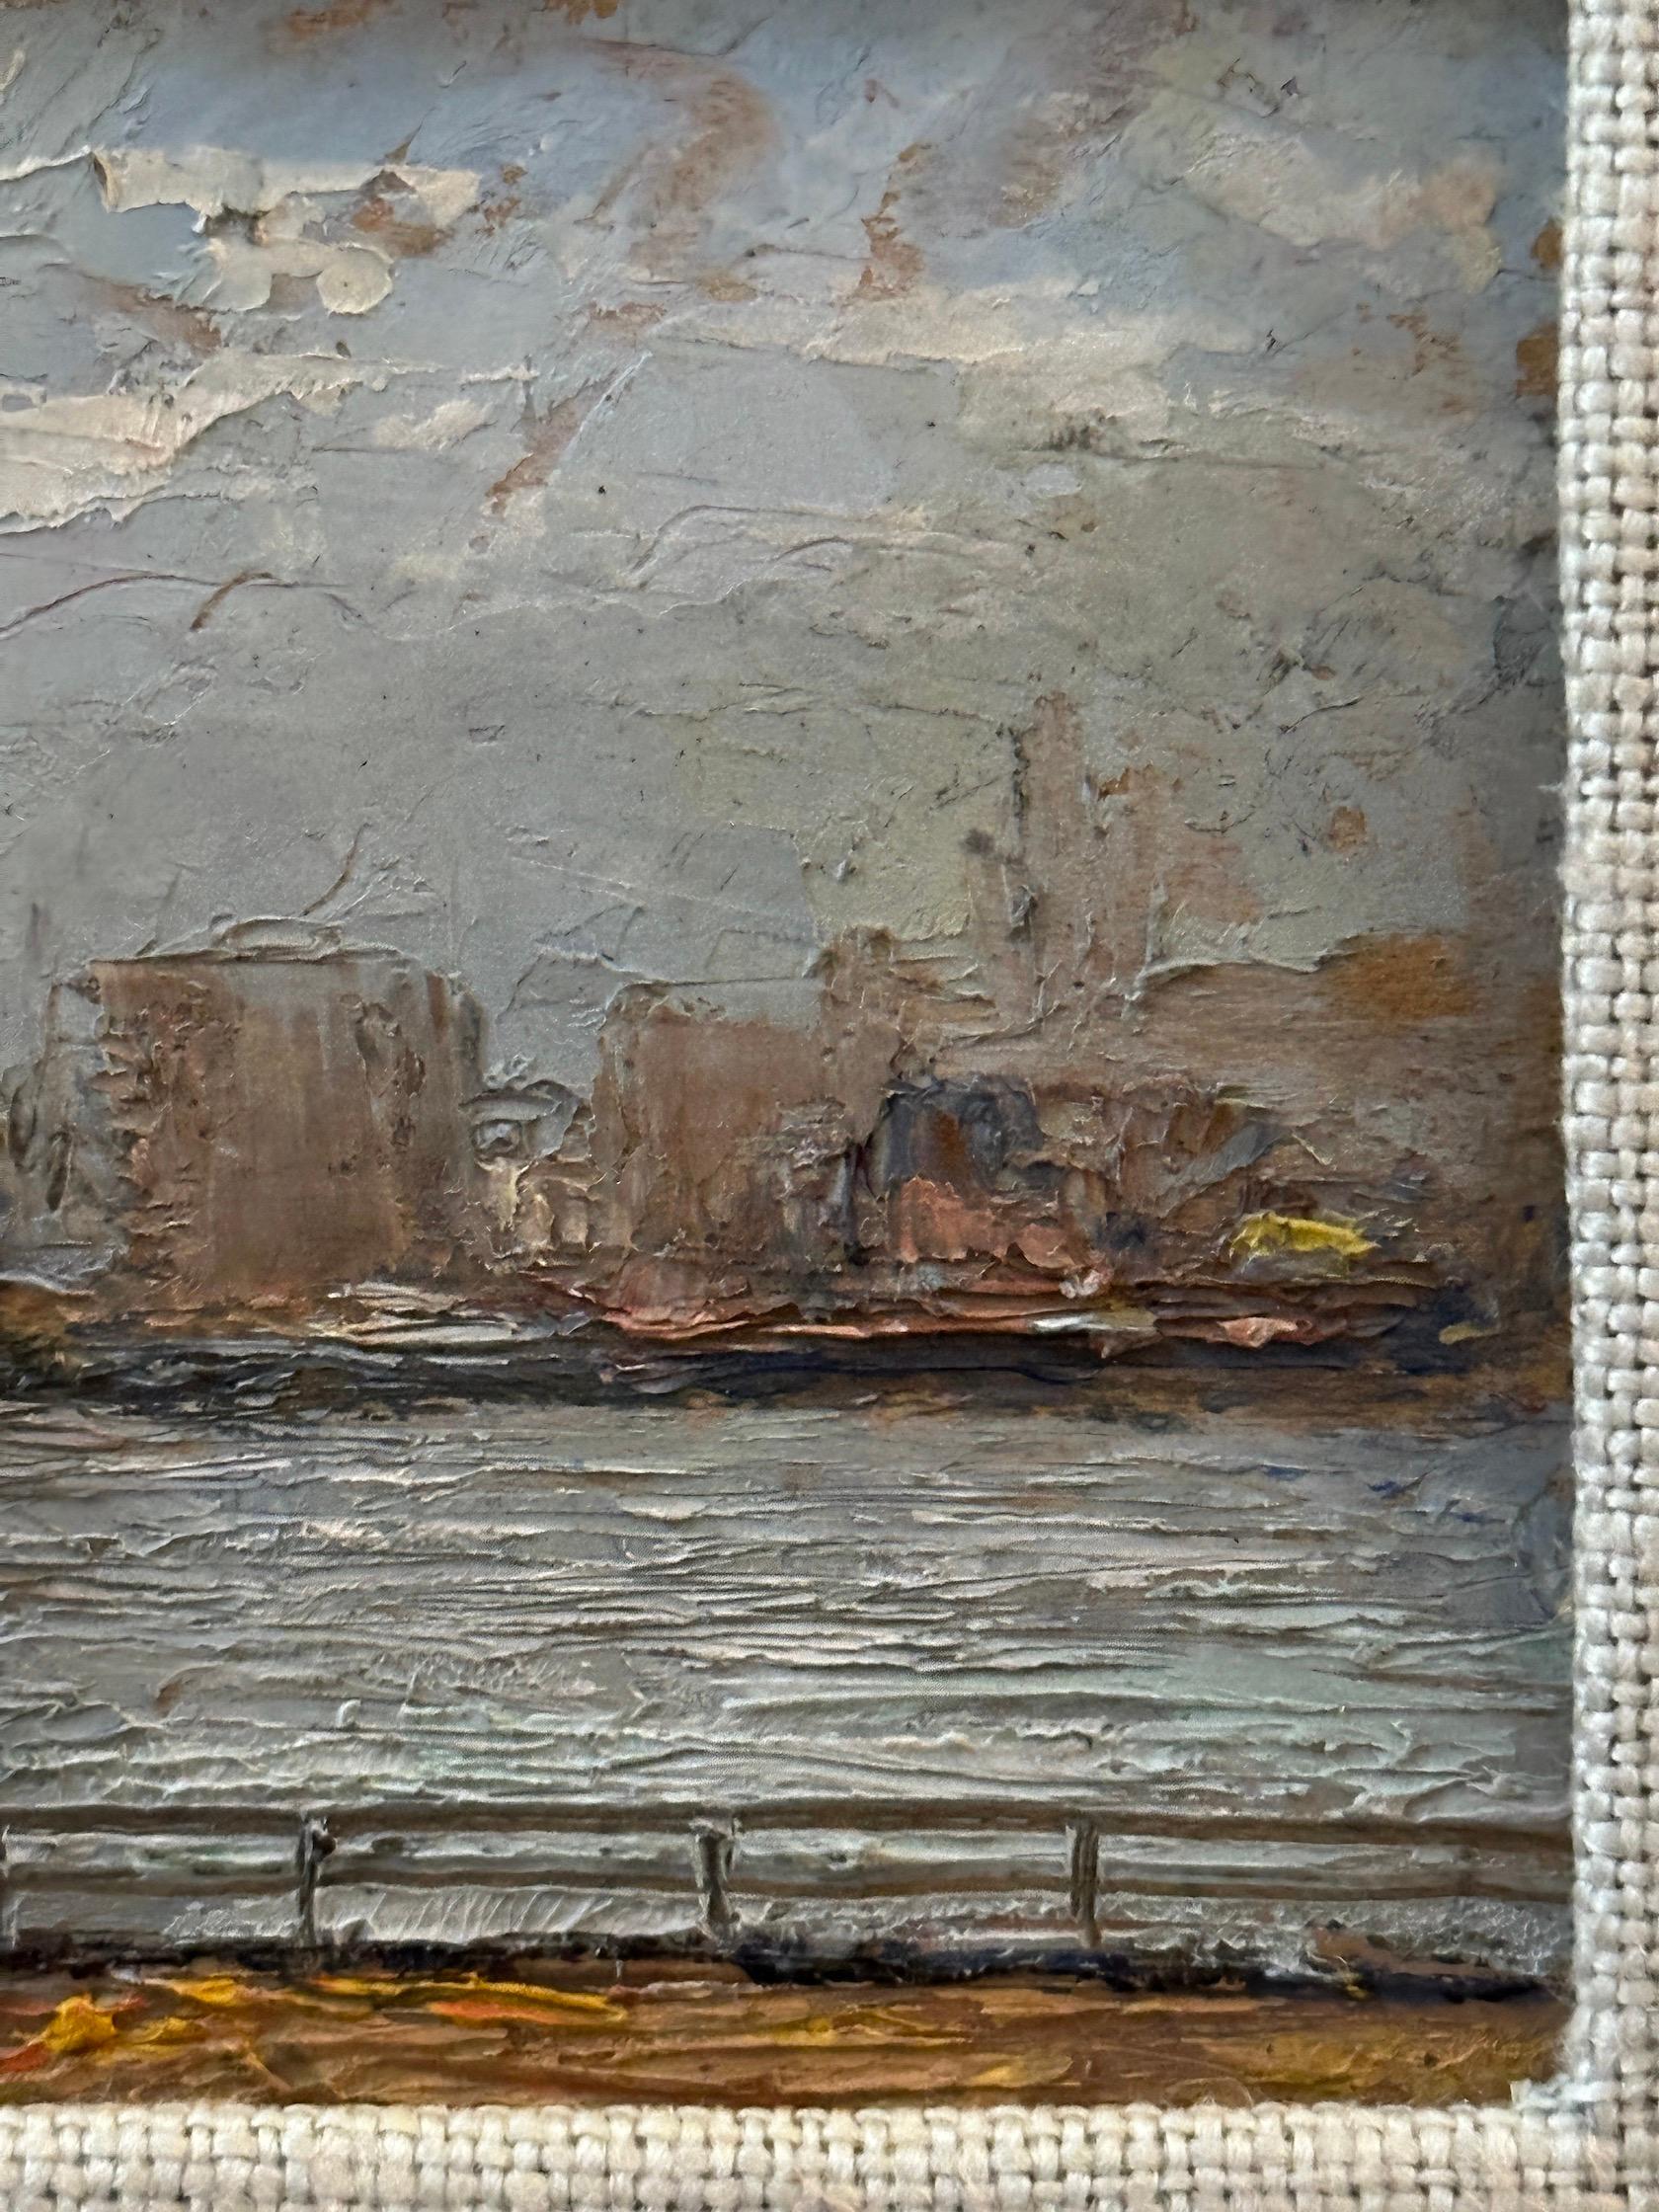 Pietro Sansalvadore war Anfang bis Mitte des 20. Jahrhunderts tätig. 

Er malte im Stil des Impressionismus und in kleinem Maßstab.

Der Erwerb eines impressionistischen Gemäldes der Hammersmith Bridge des italienischen Malers Pietro Sansalvadore